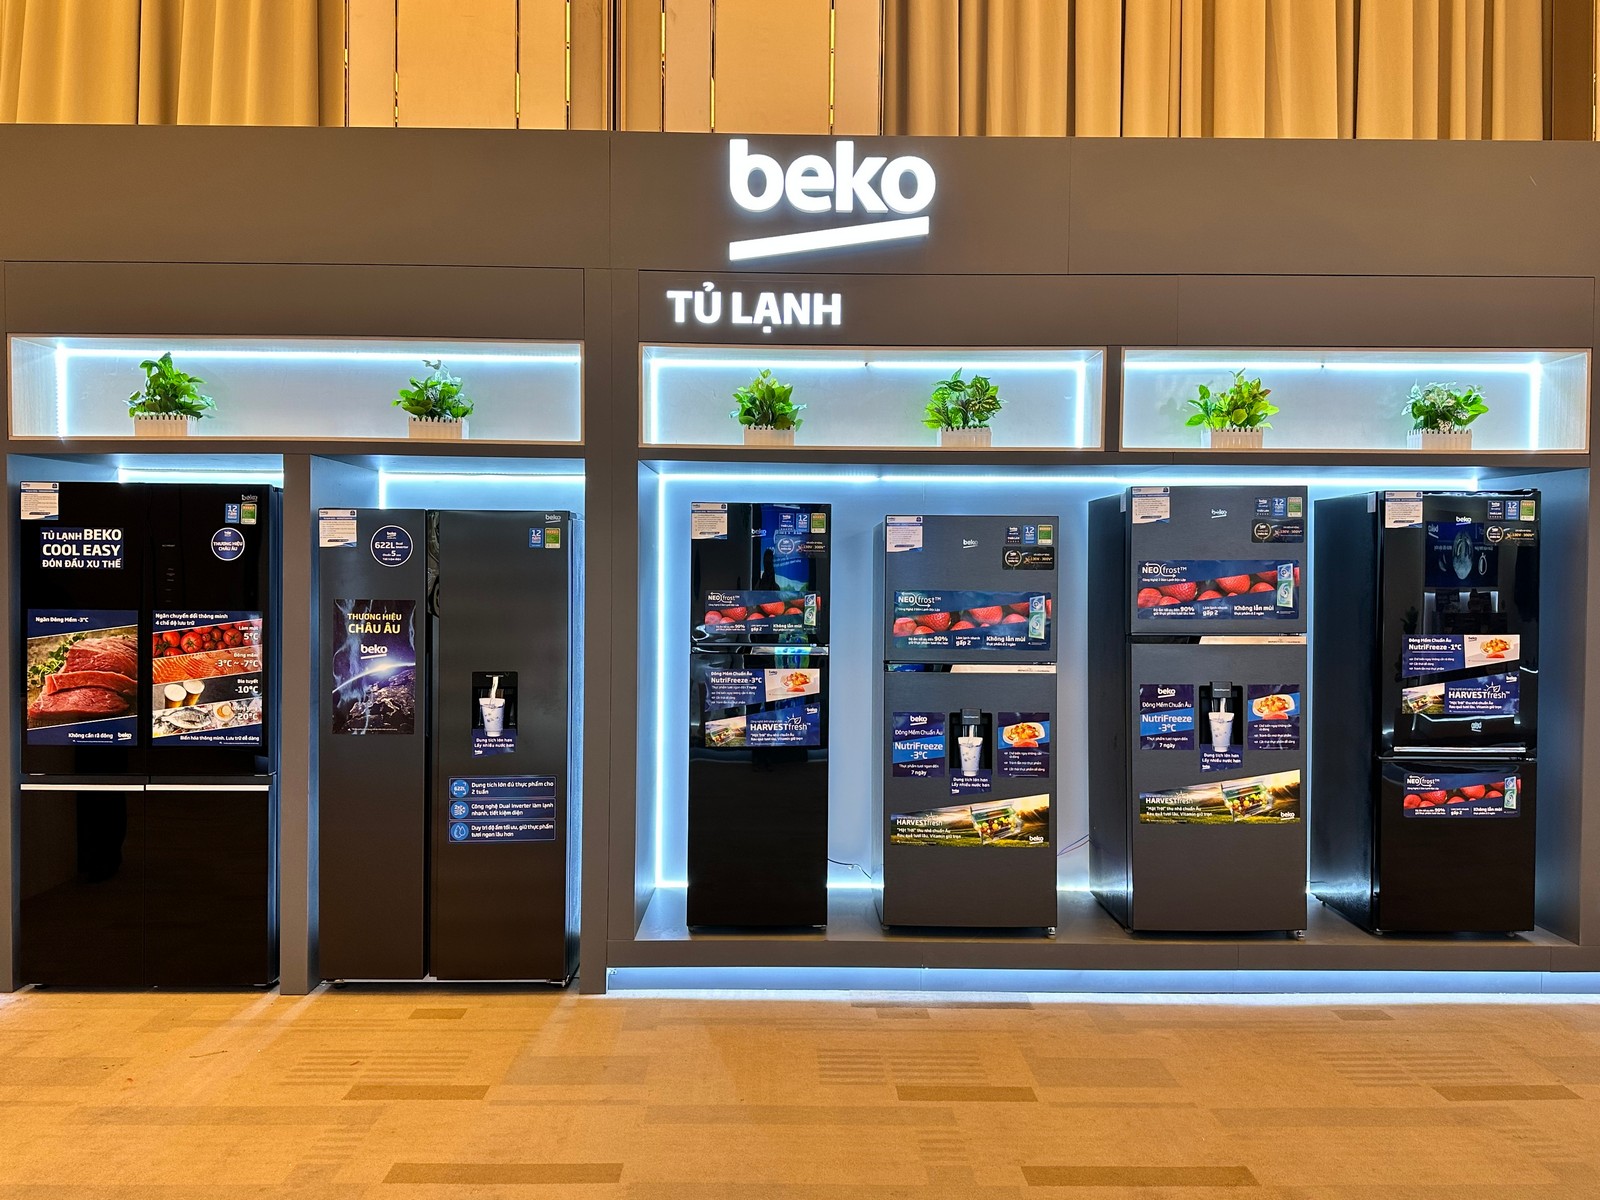 Beko mở rộng danh mục sản phẩm, đánh dấu giai đoạn phát triển mới